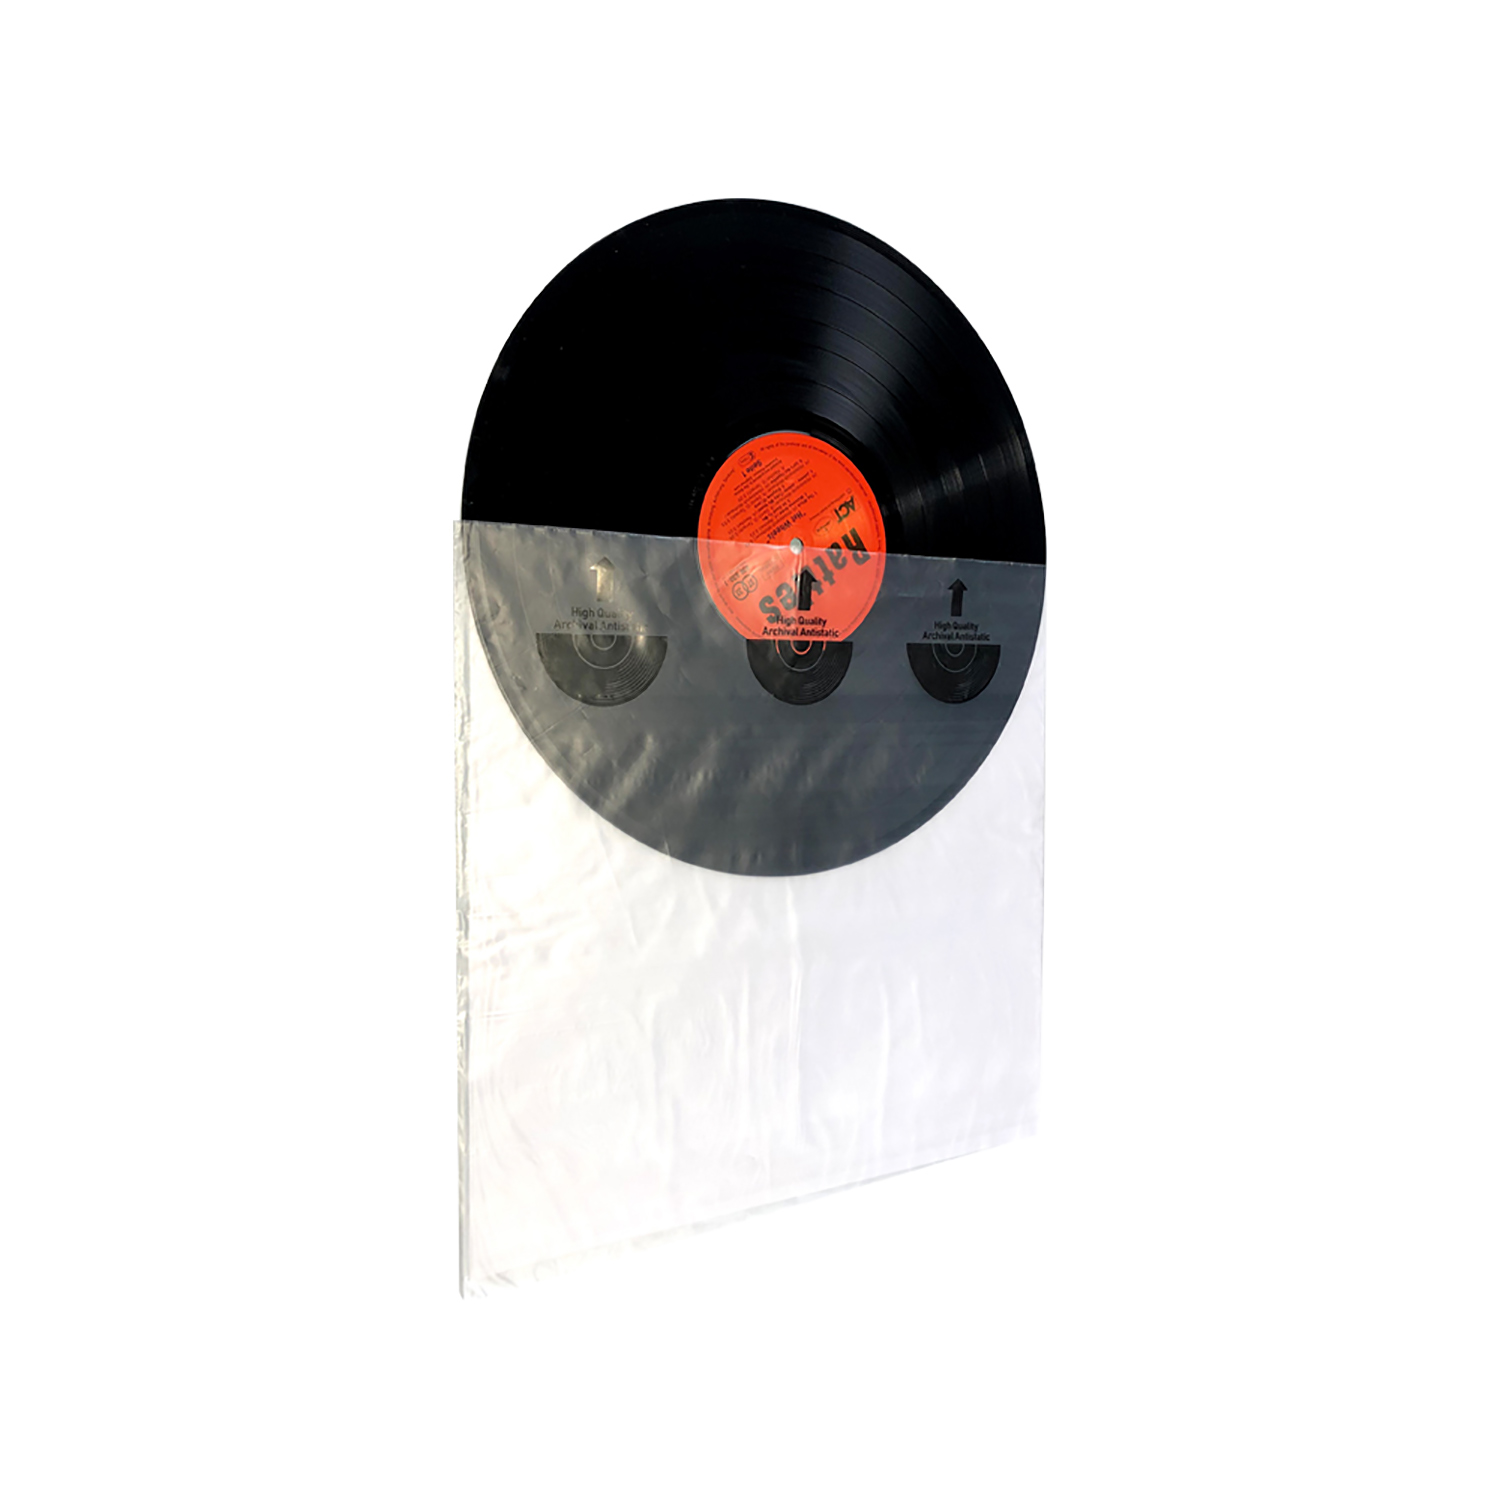 High Innenhülle Schallplatten Quality 7EVEN & Schallplatten LP-Innenhülle HDPE Reispapier